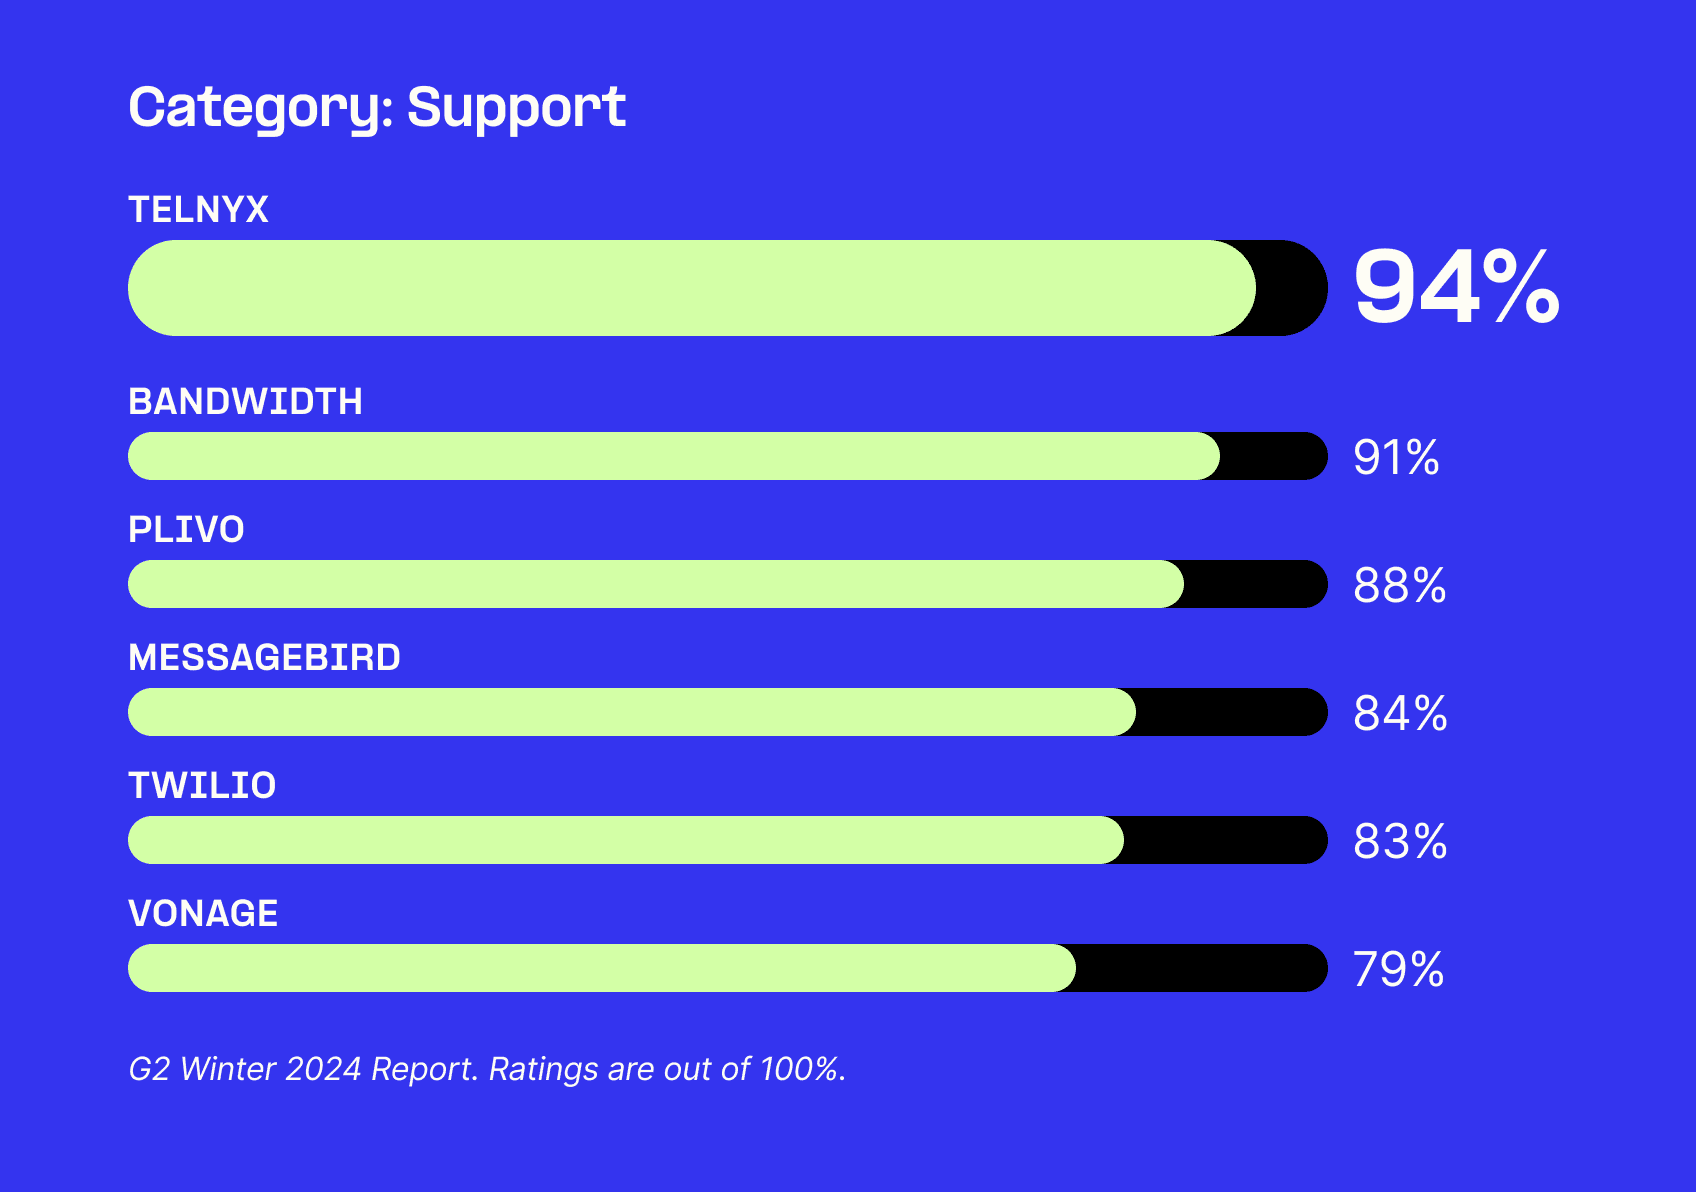 Telnyx 94%
Bandwidth 91%
Plivo 88%
MessageBird 84%
Twilio 83%
Vonage 79%